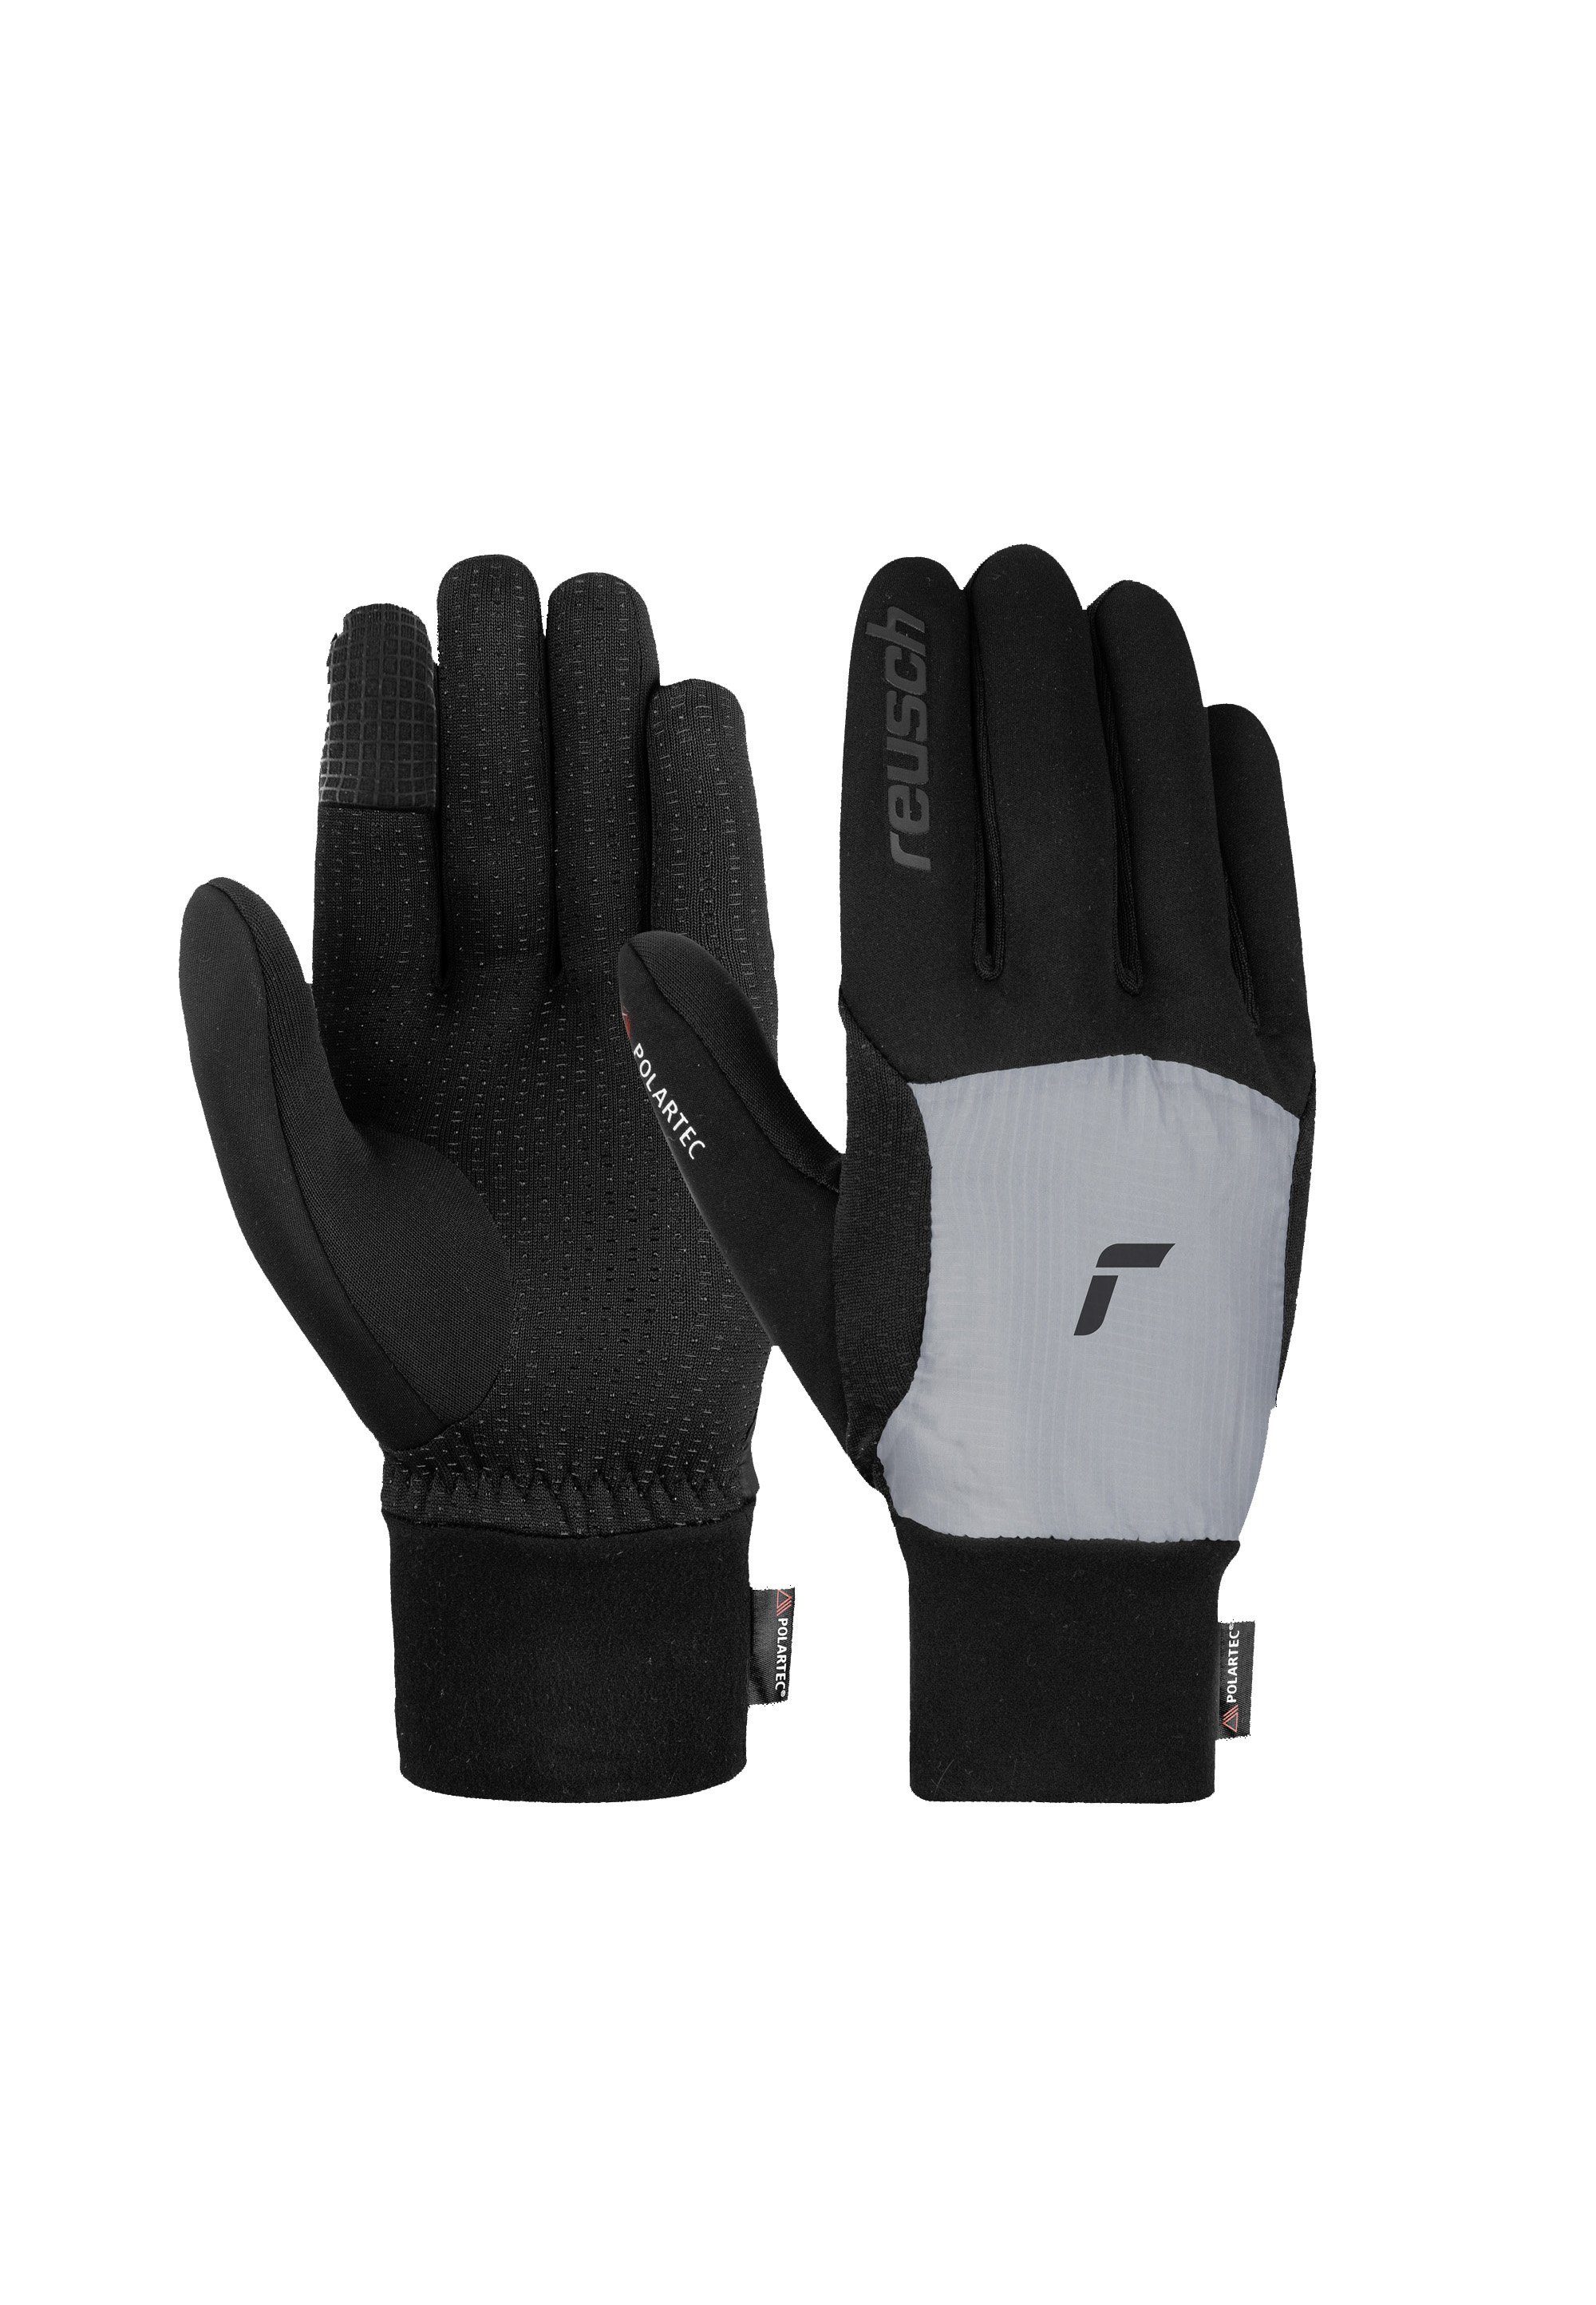 Reusch Skihandschuhe Garhwal Hybrid mit praktischer Touchscreen-Funktion grau-schwarz | Handschuhe